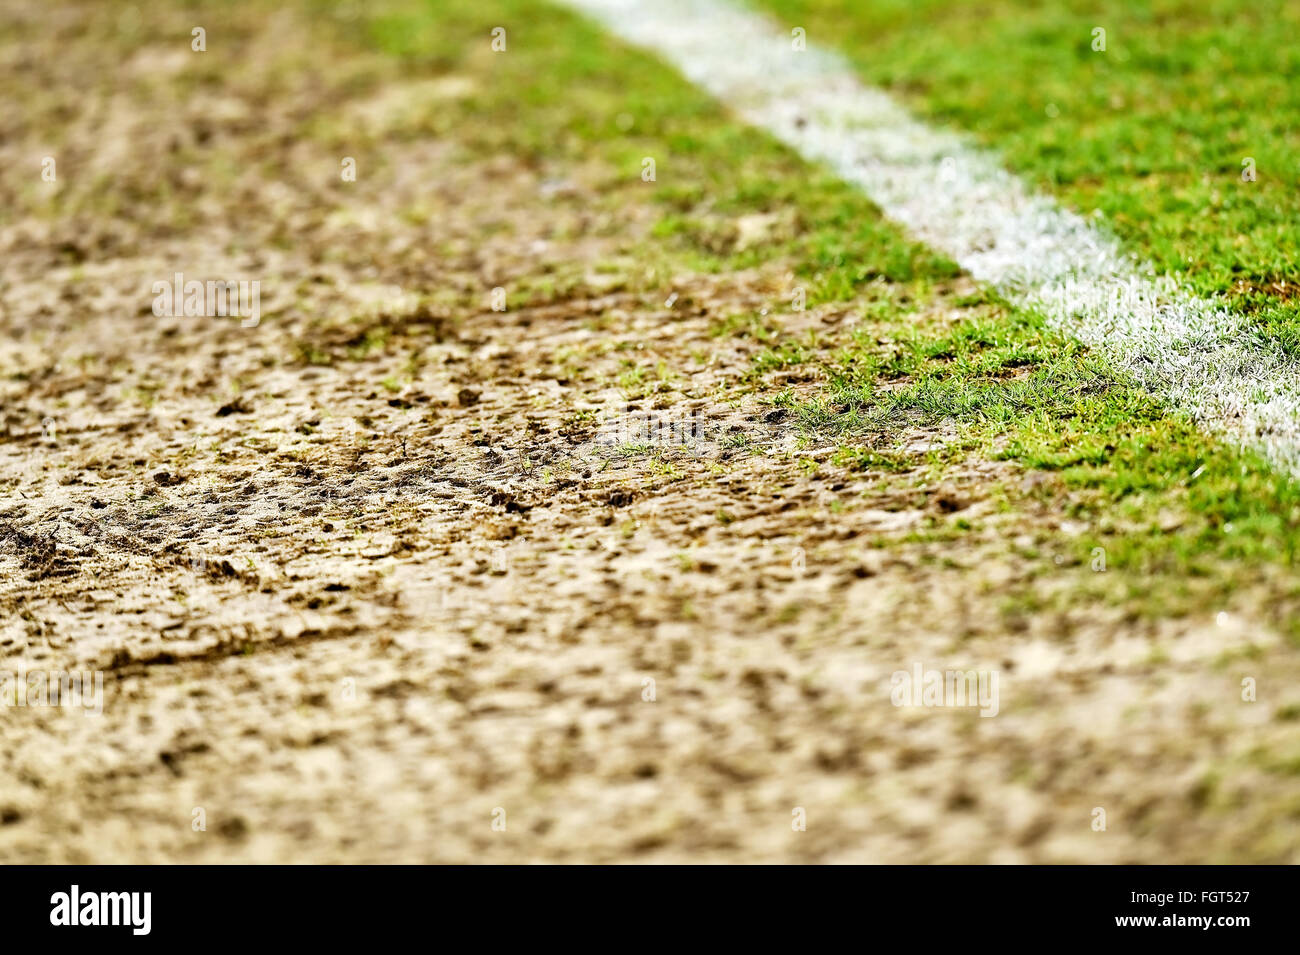 Dettaglio shot con tappeto erboso danneggiato sull'attività complementare di un campo di calcio Foto Stock